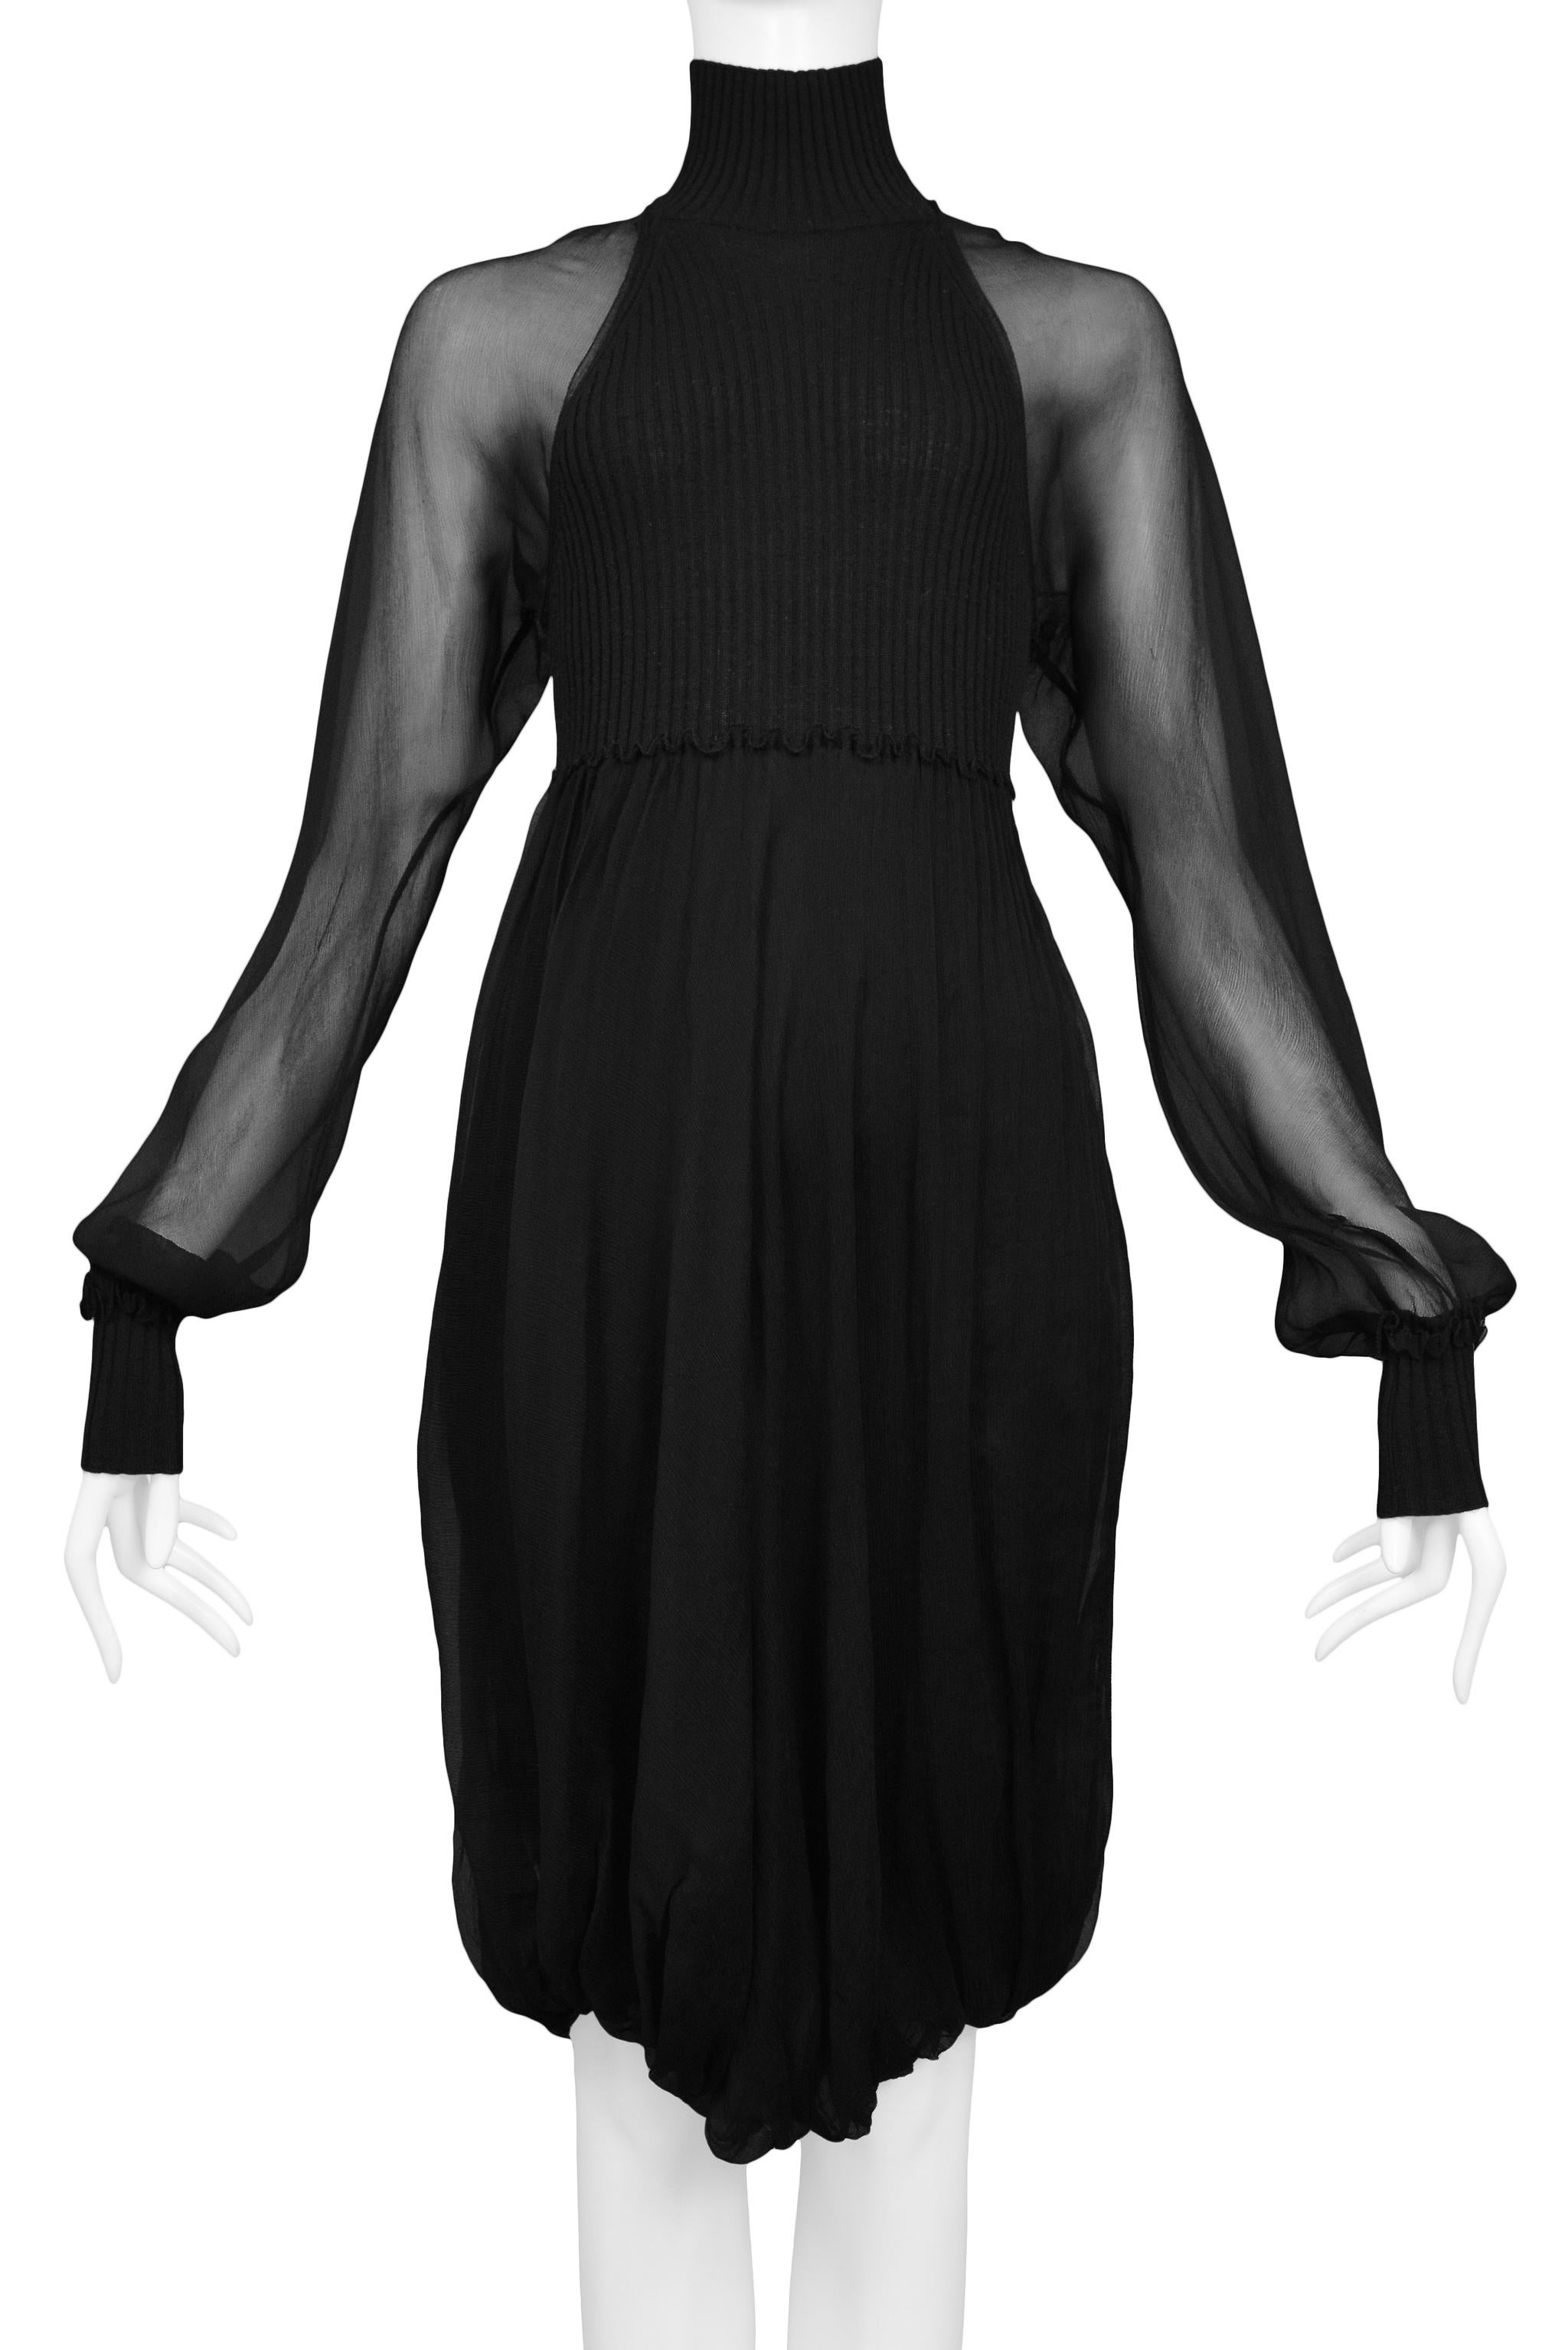 jean paul gaultier illusion dress